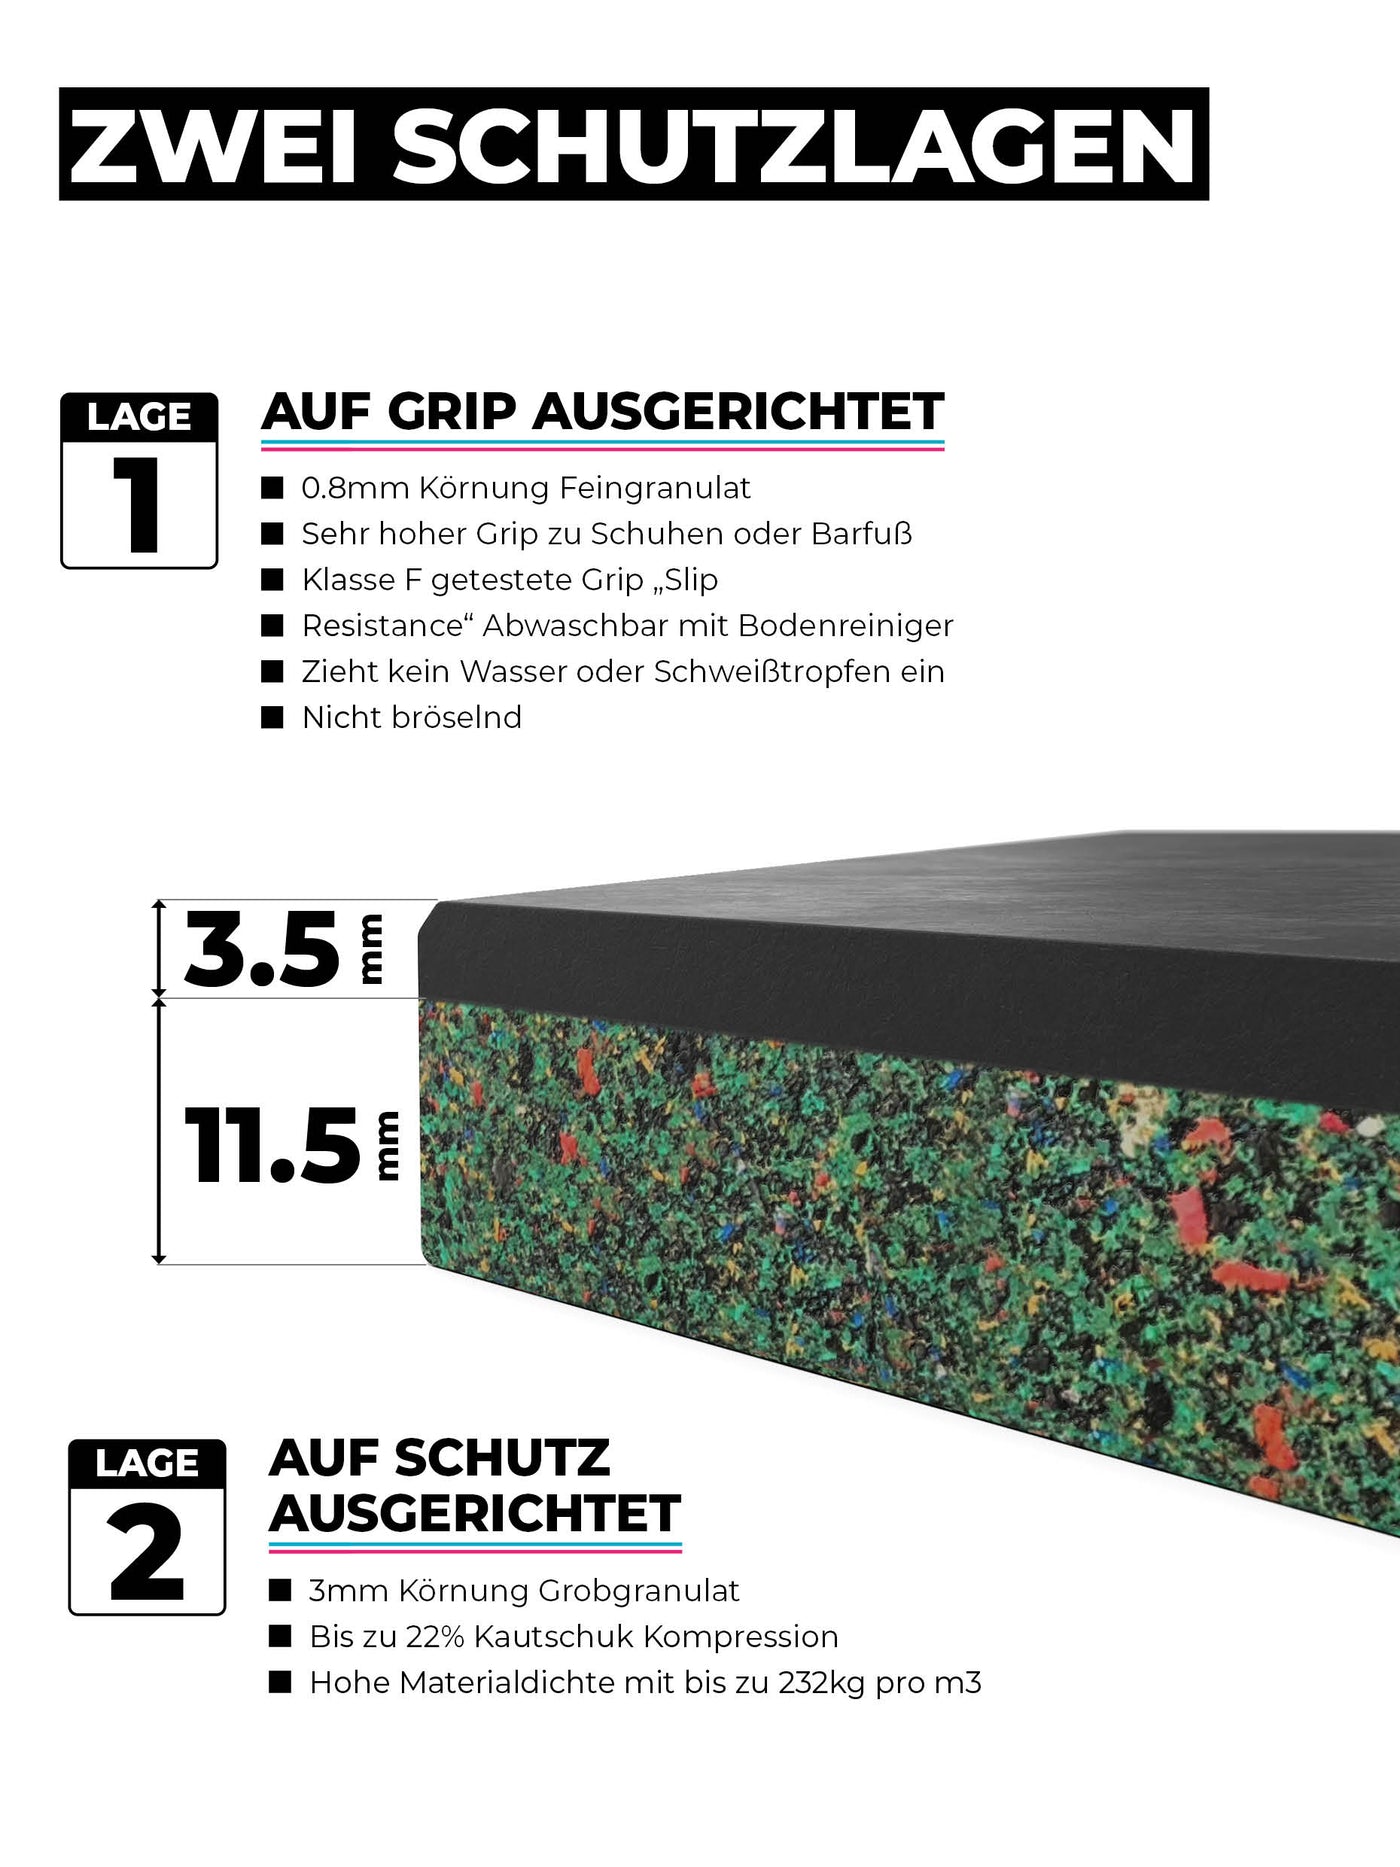 Bodenschutz SolidProtect 4m2: hohes Eigengewicht | #size_16-matten-a-50x50cm